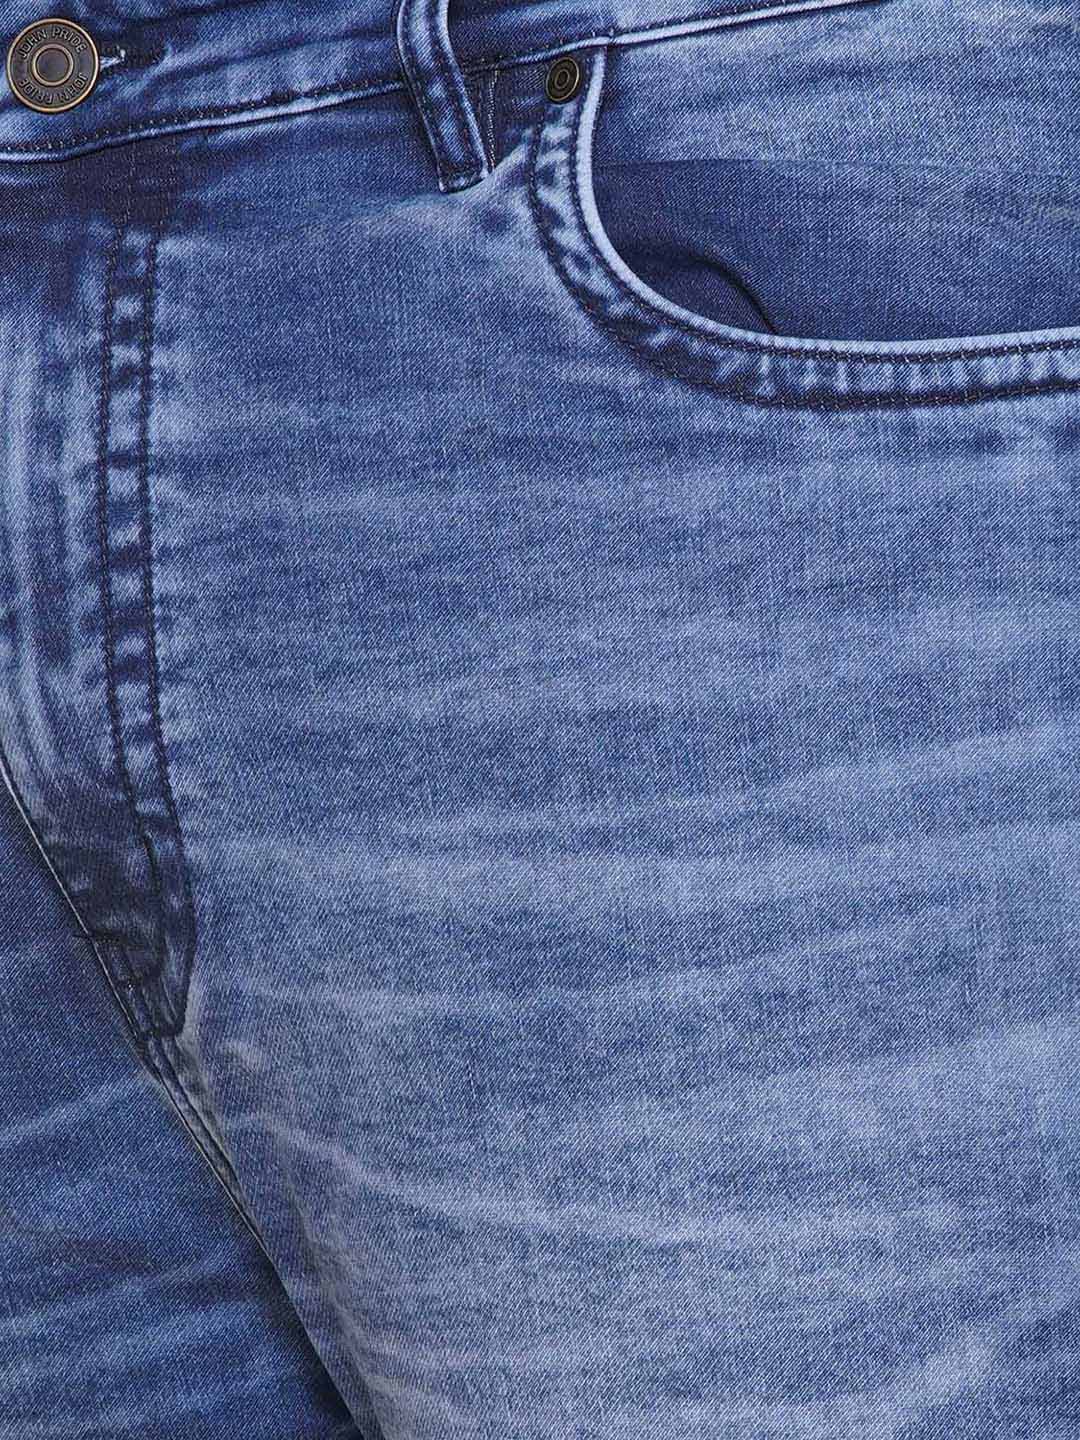 bottomwear/jeans/JPJ12427/jpj12427-2.jpg